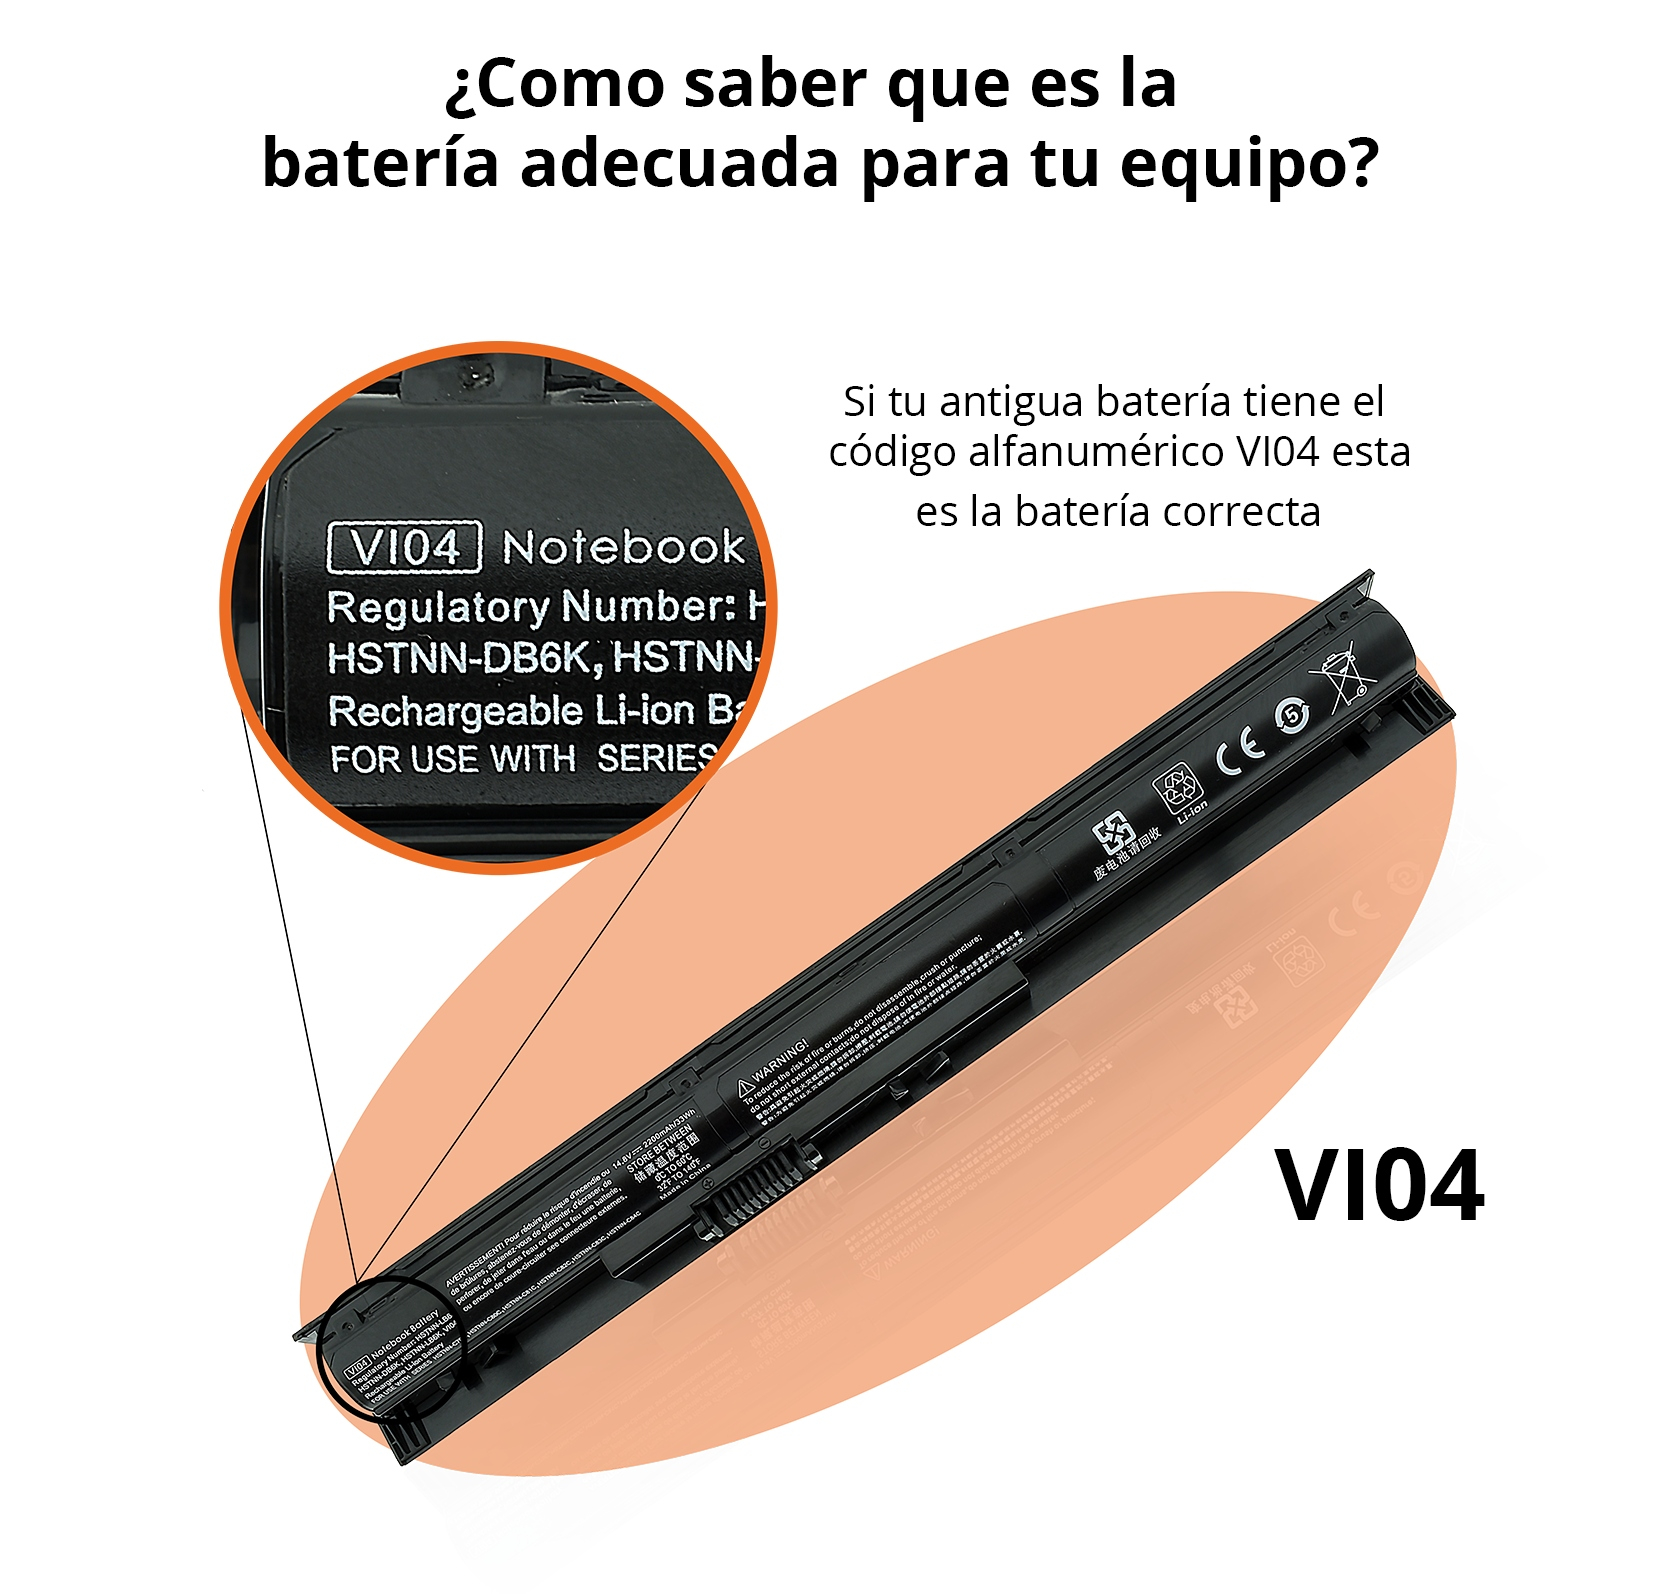 Bateria HP vi04 notebook 756478-221